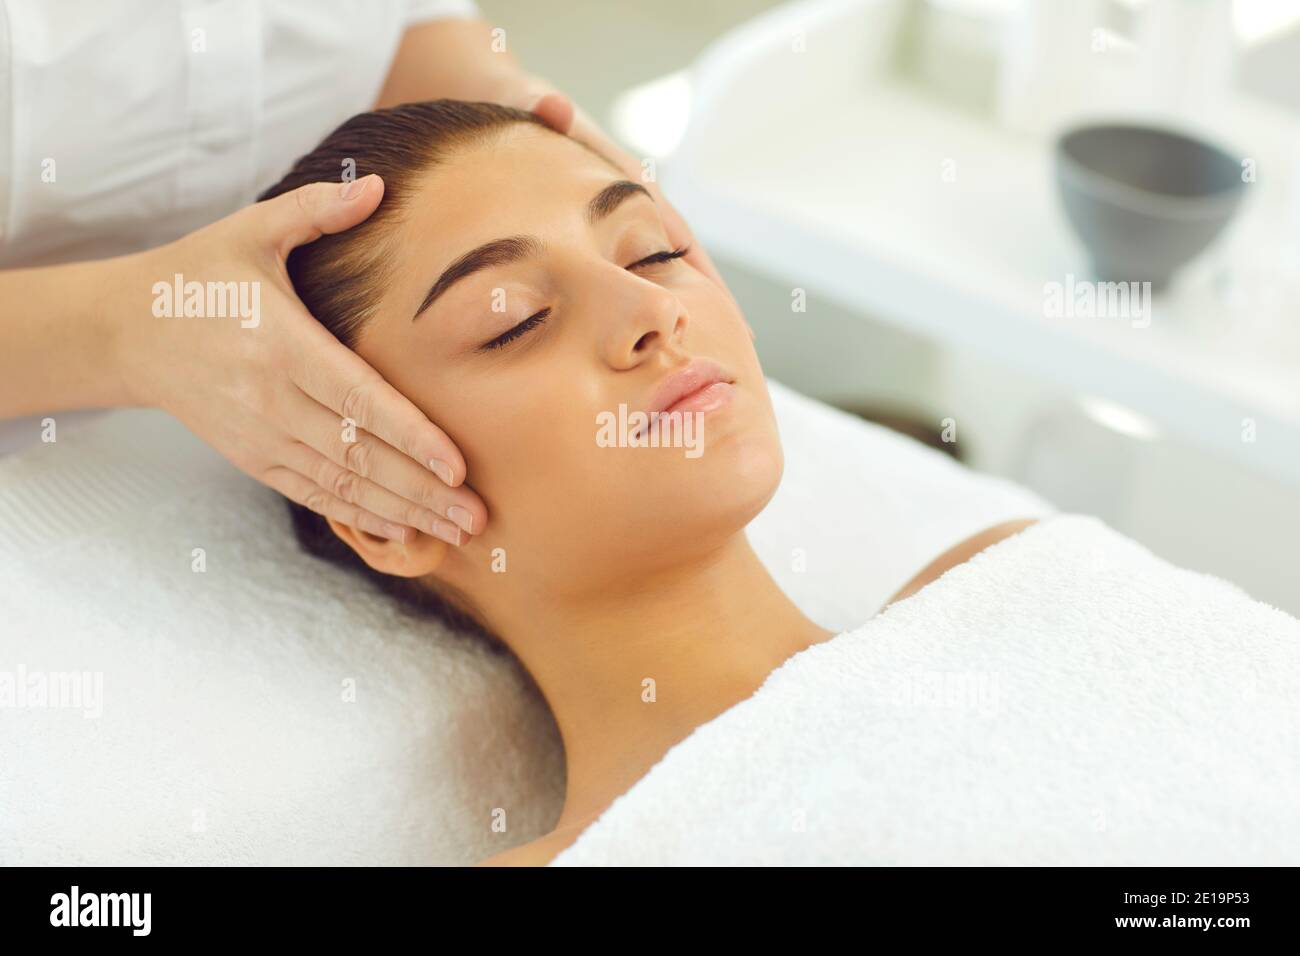 Mani di cosmetologist che toccano la testa e che controllano la pelle o che fanno massaggio viso per giovane donna Foto Stock